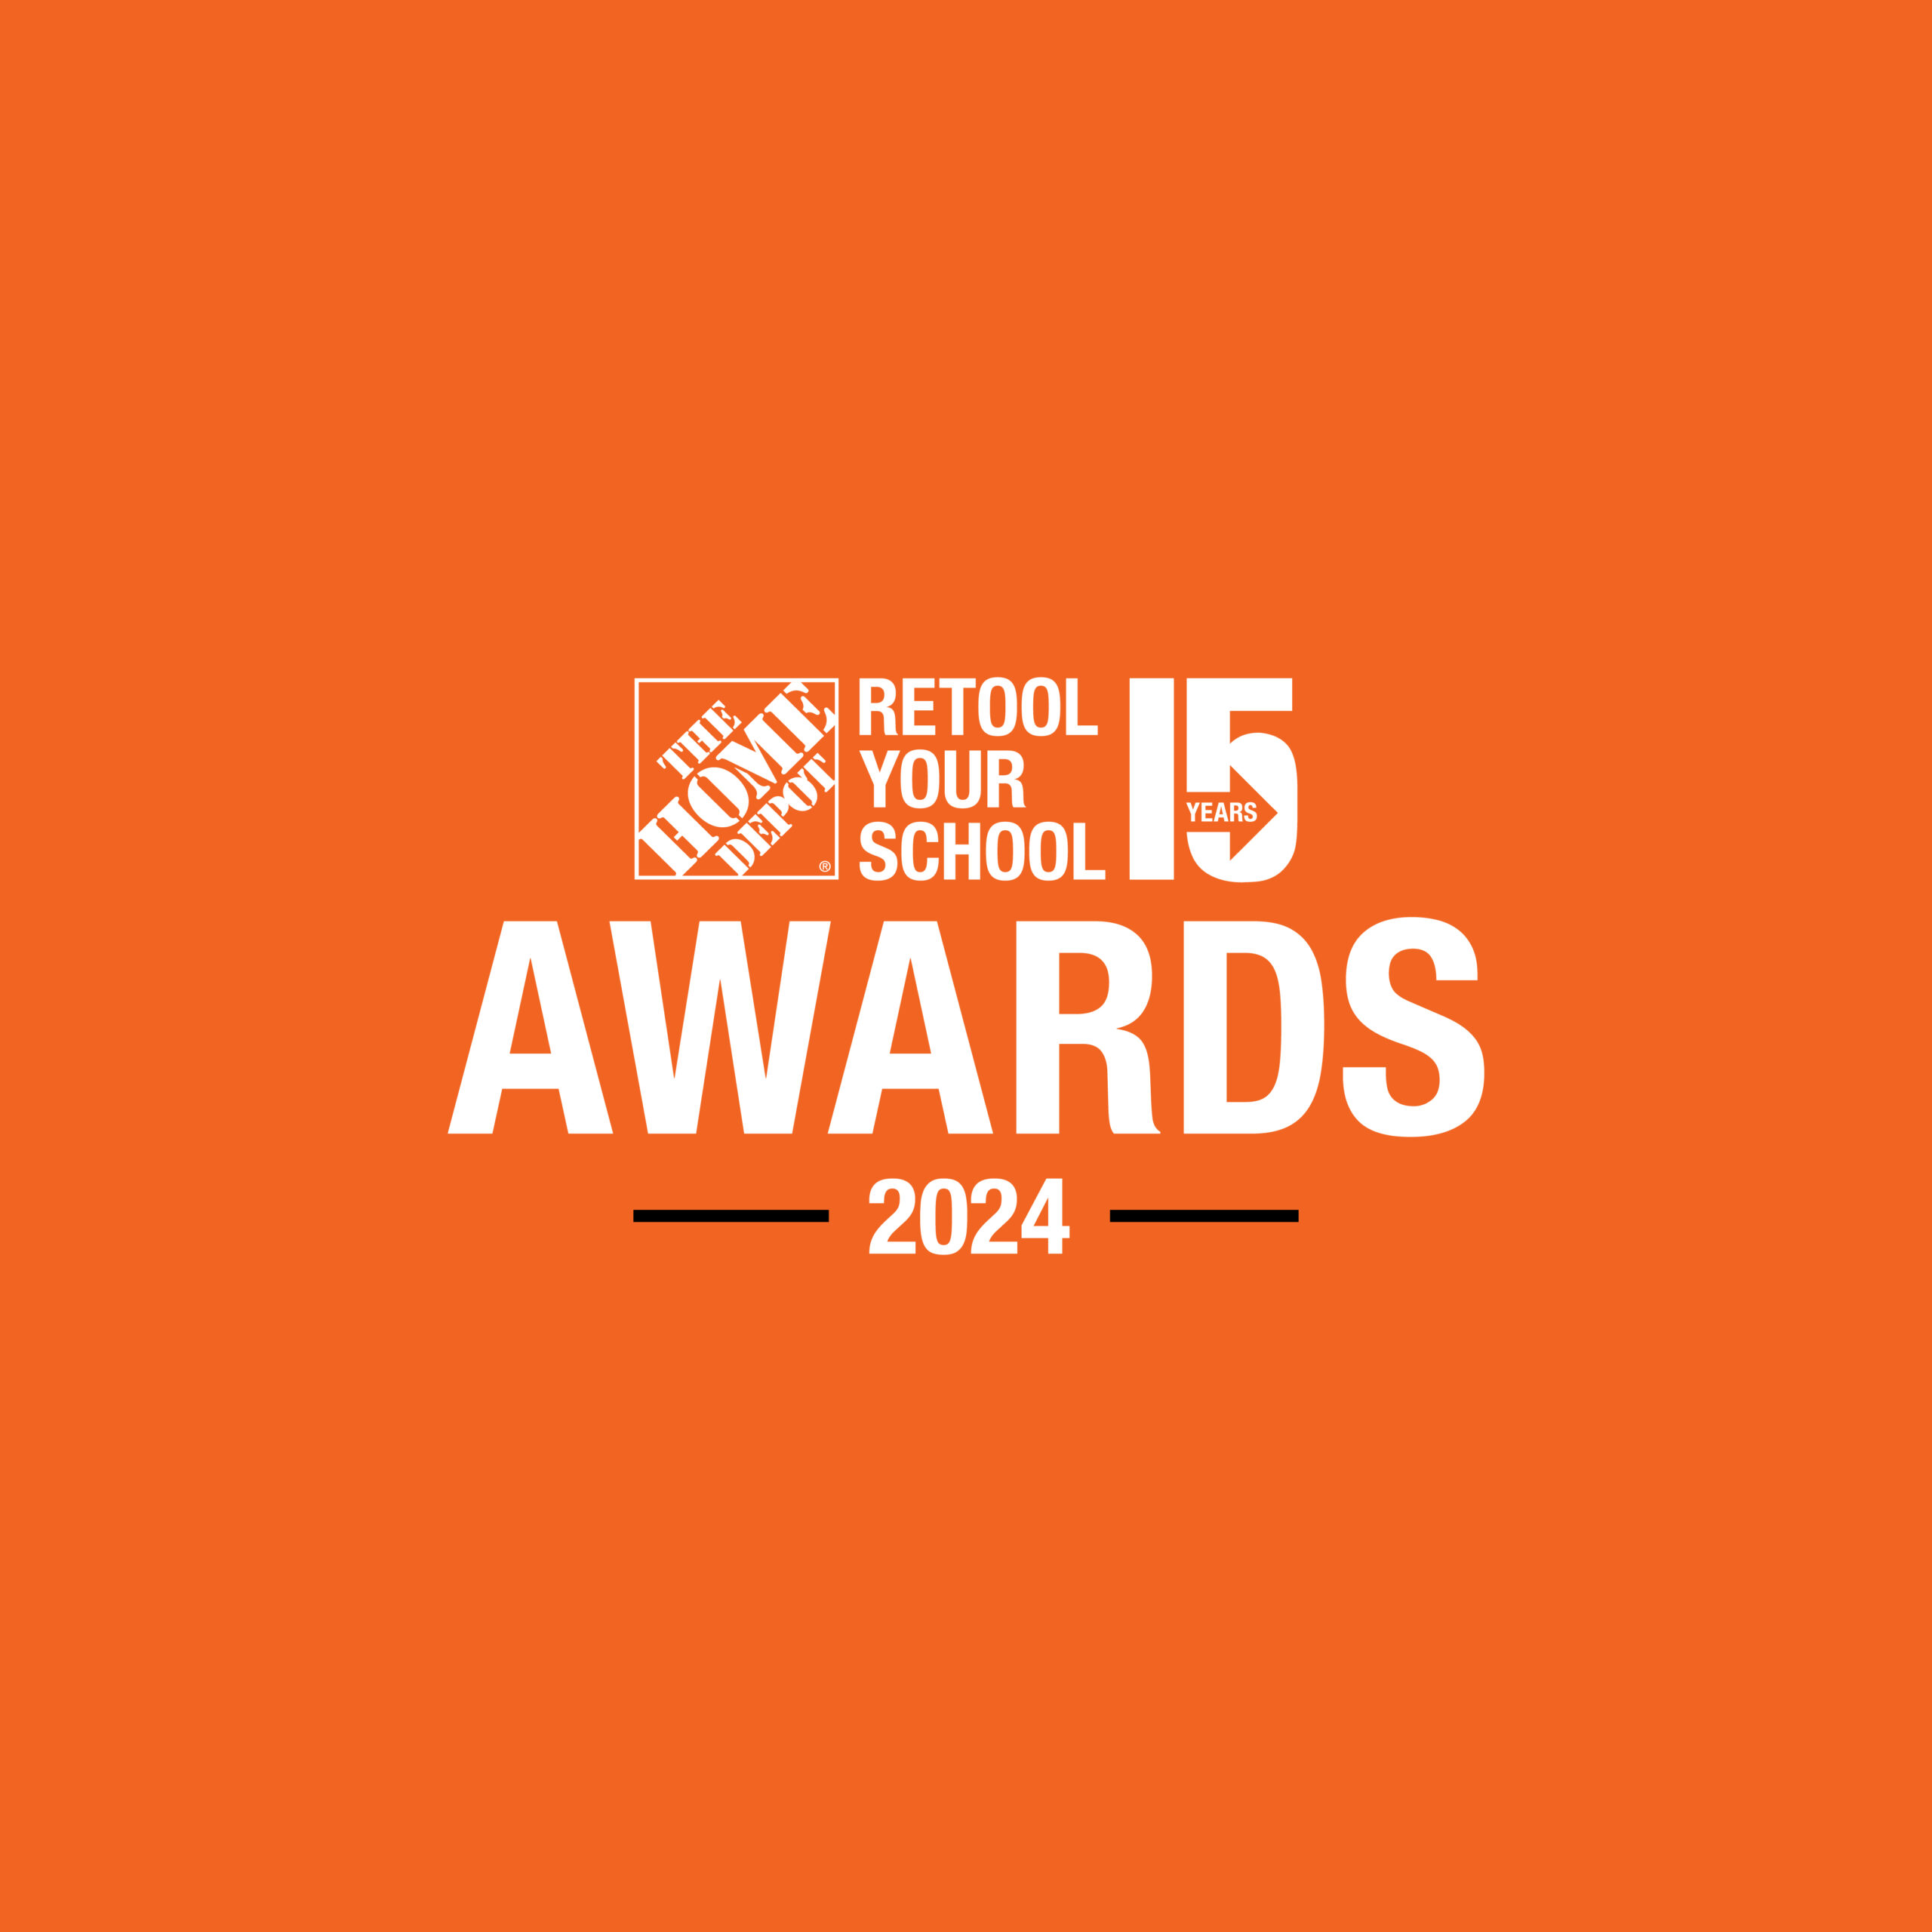 Home Depot Retool Your School 2024 Awards